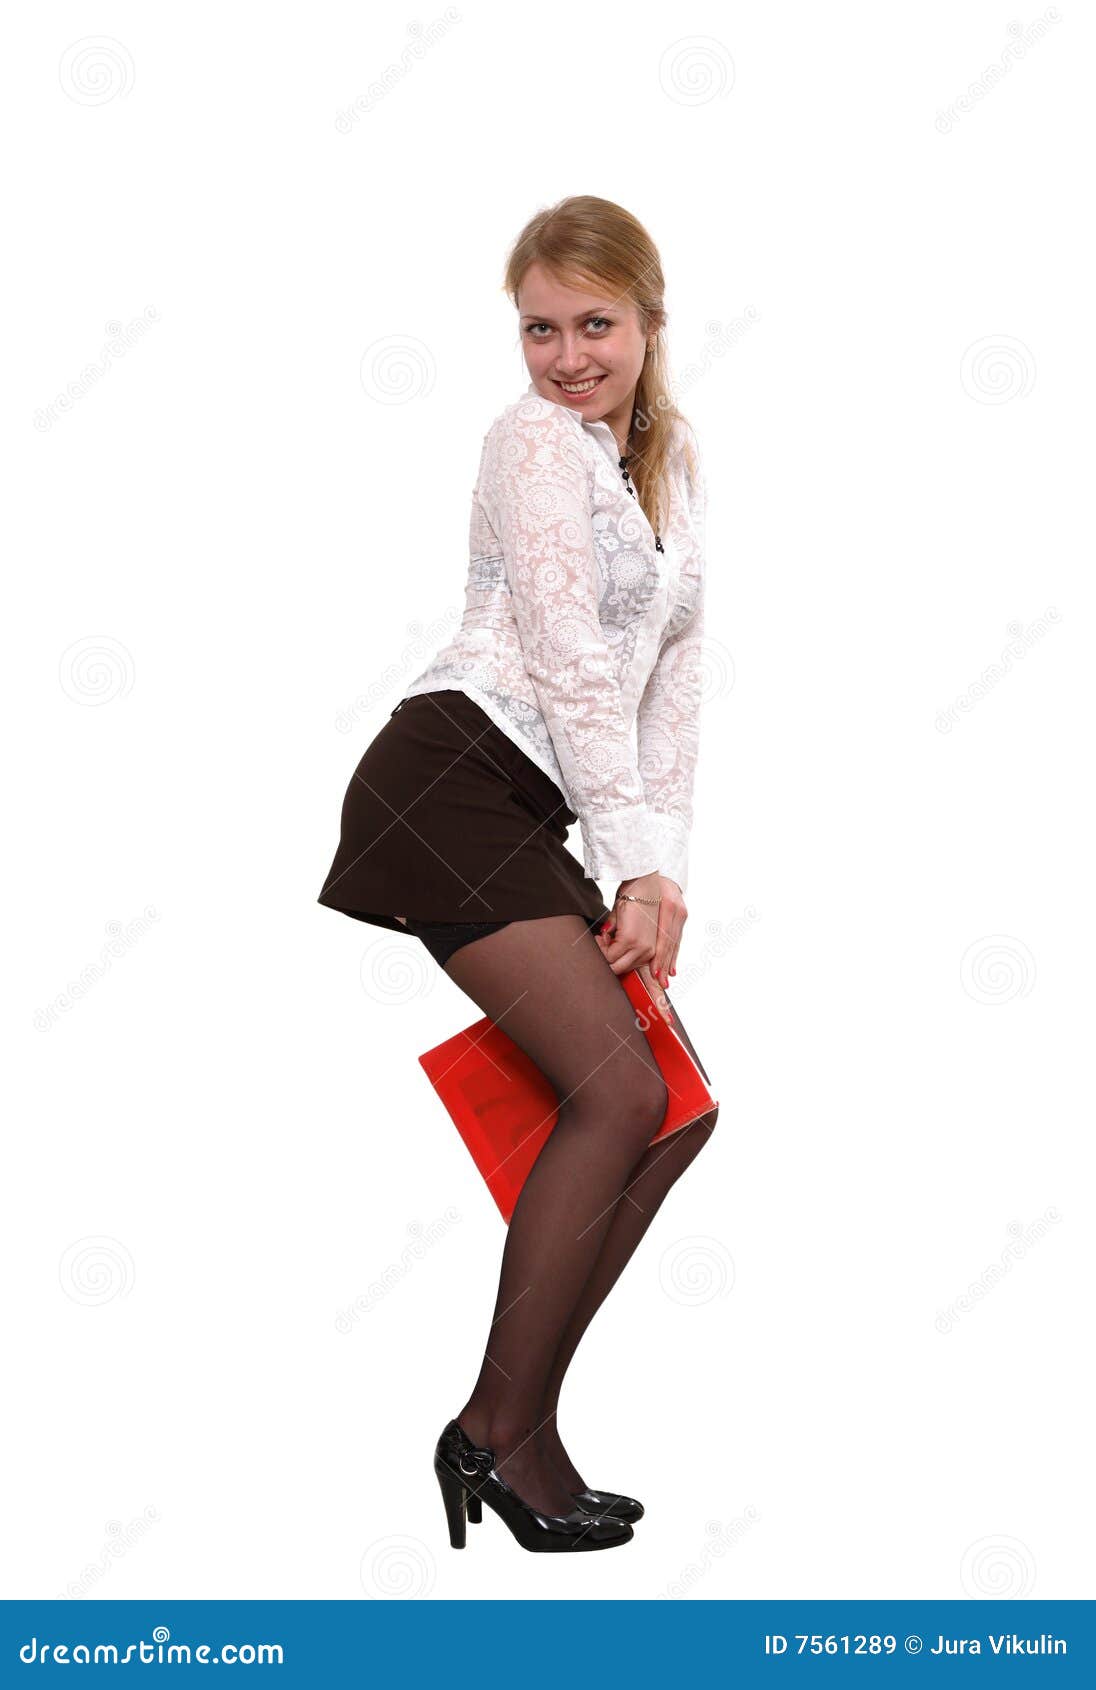 Short Skirt Secretary Pinterest